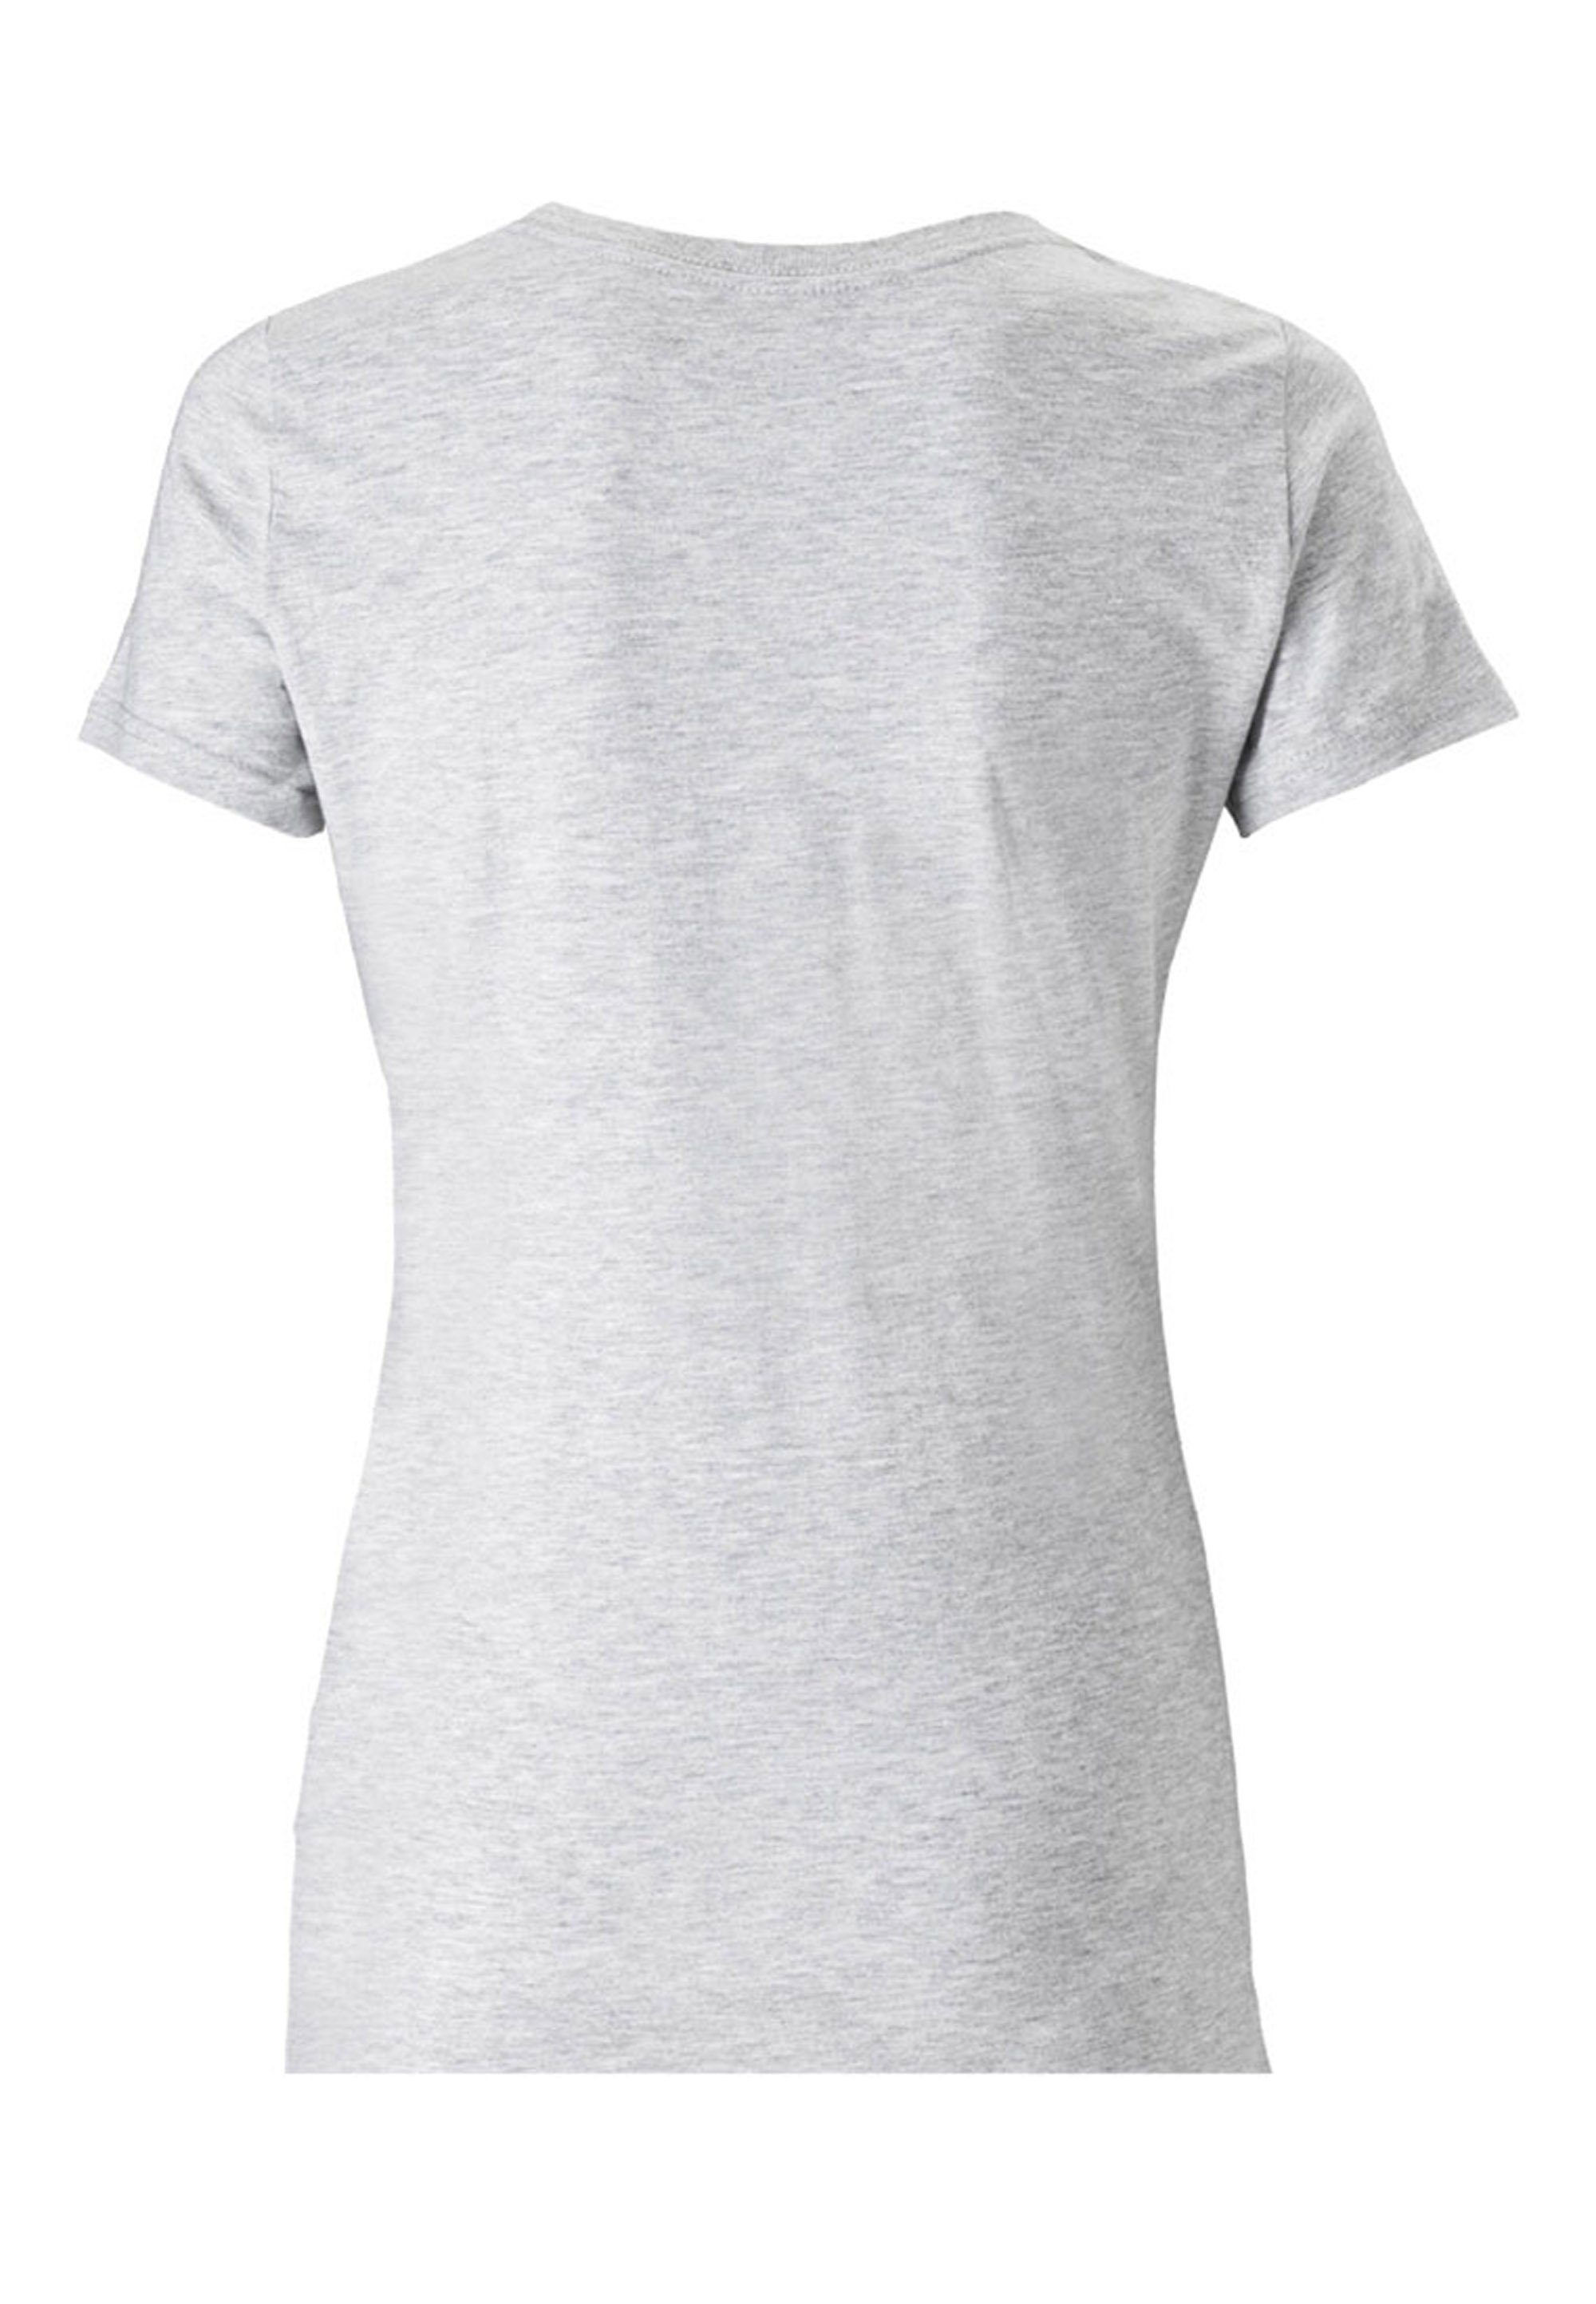 LOGOSHIRT T-Shirt Chupa lizenzierten mit Chups Design